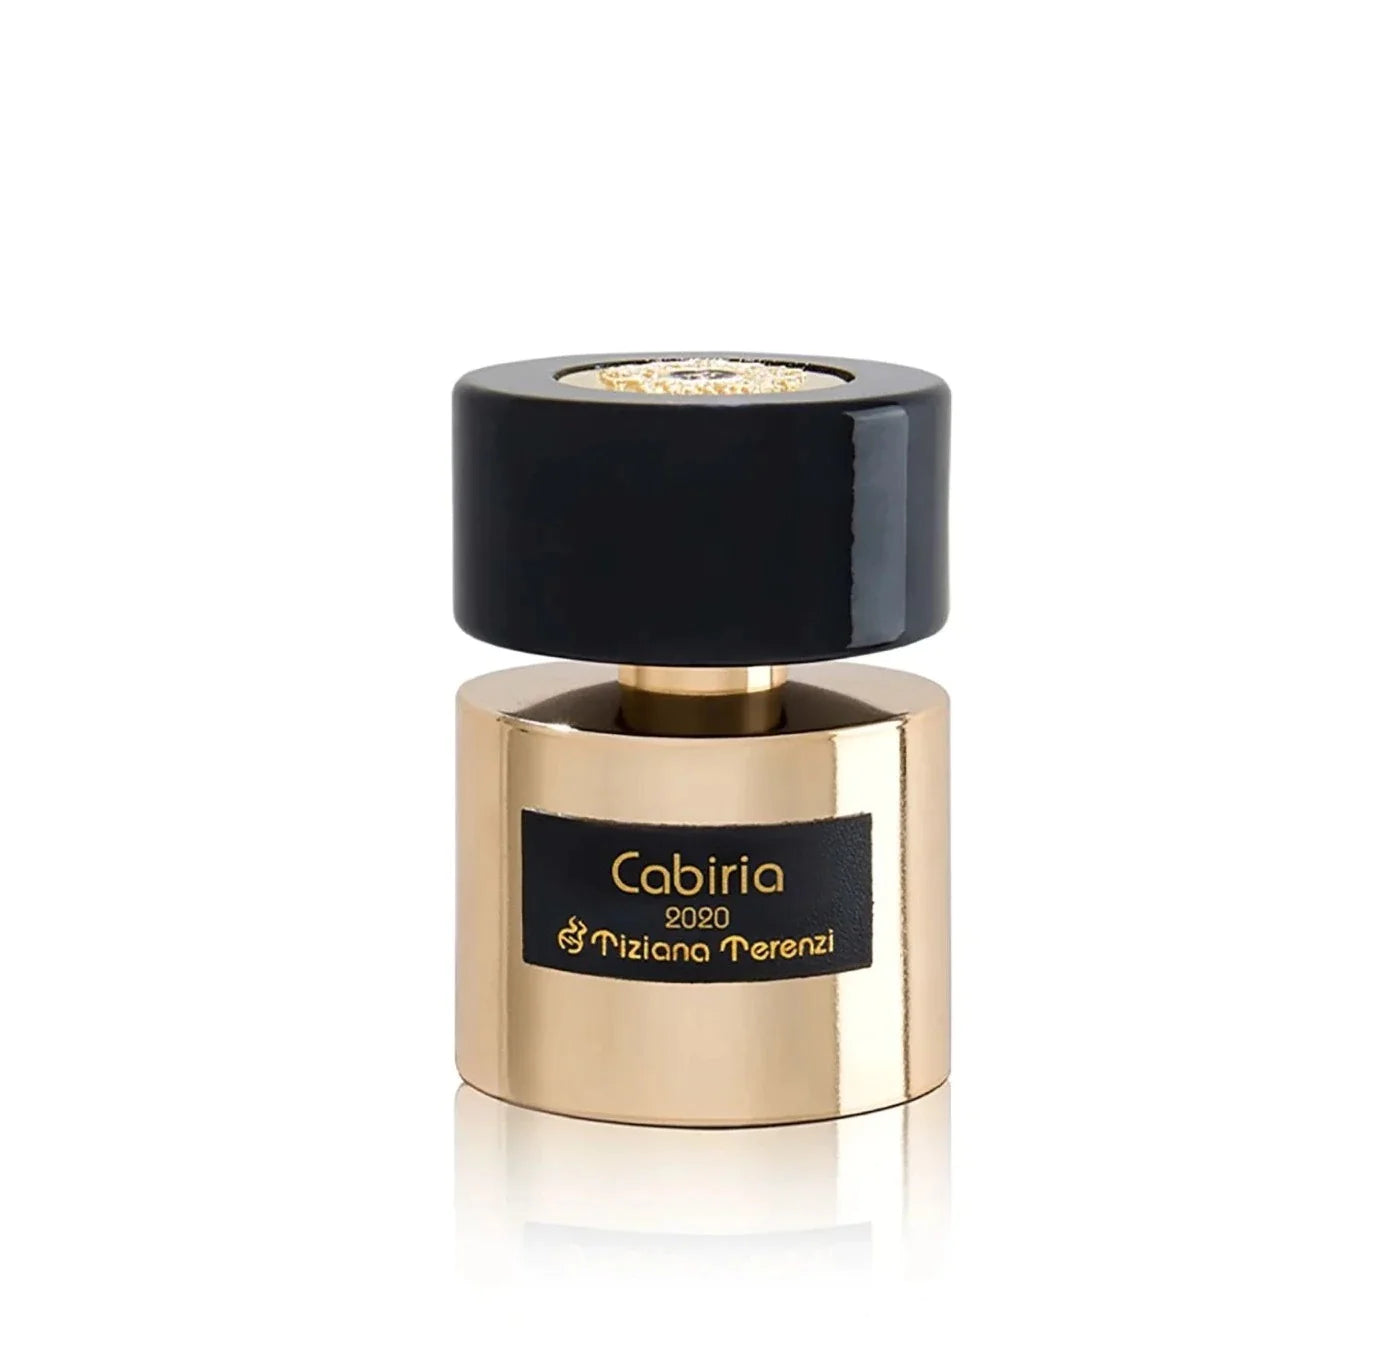 Cabiria Tiziana Terenzi Extrait de Parfum Sample 2ml